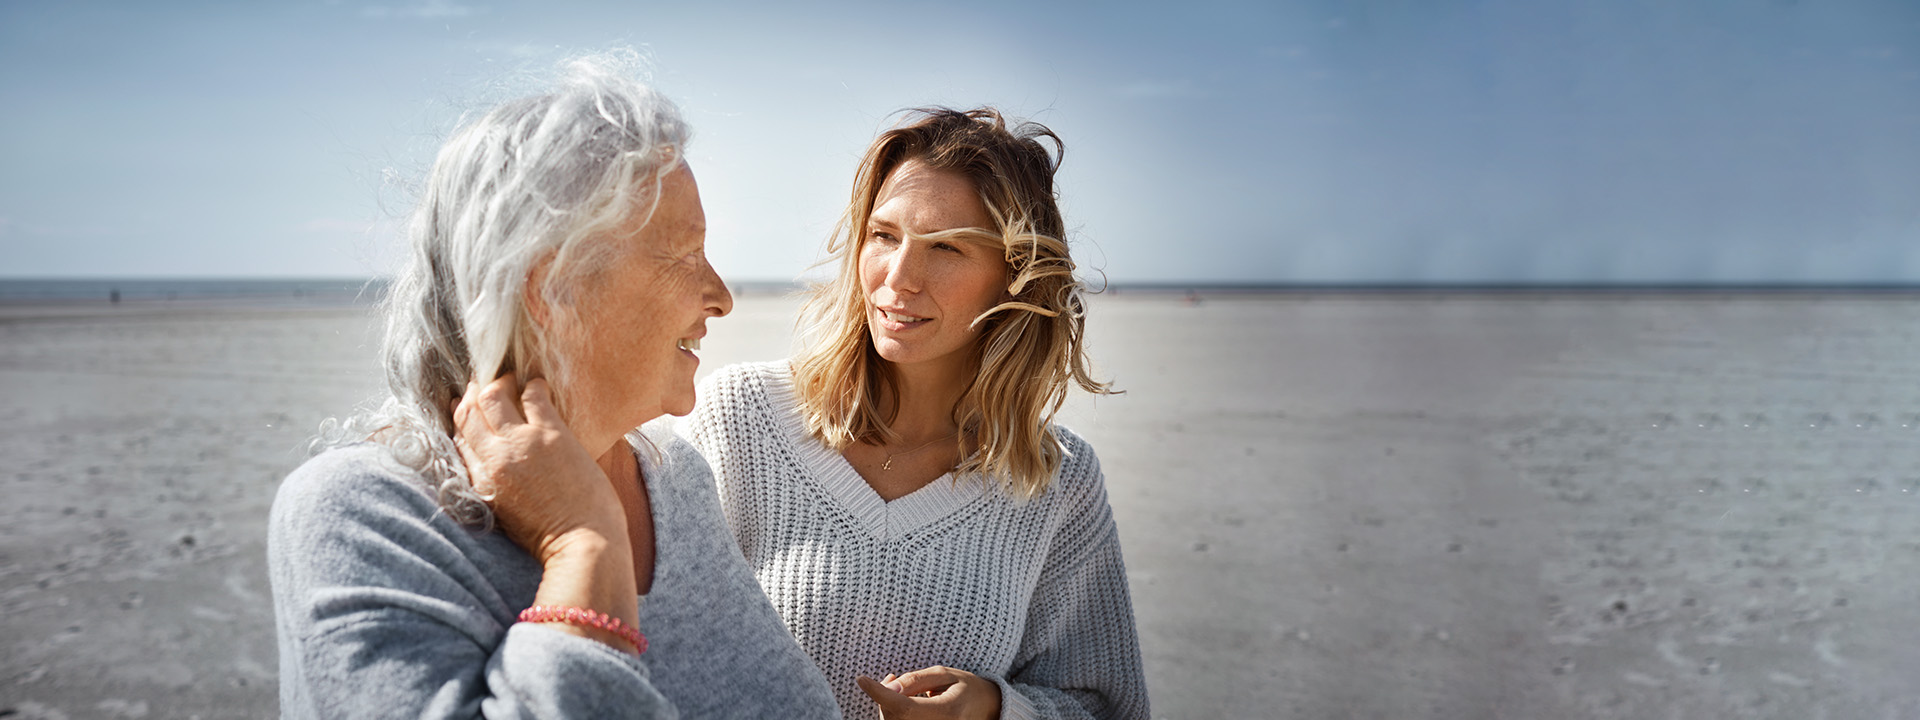 Ältere Frau im Gespräch mit erwachsener Tochter am Strand